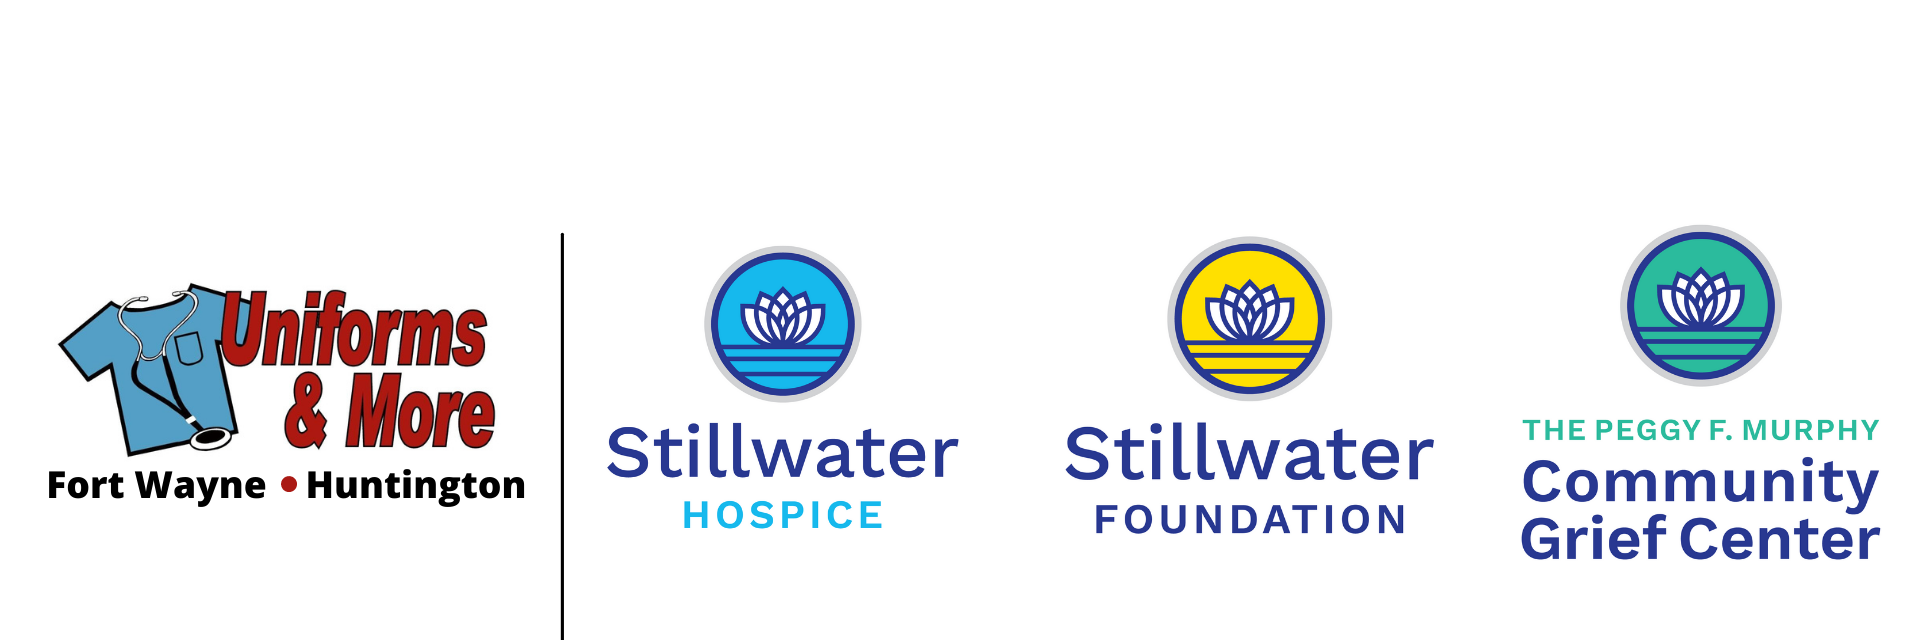 |Stillwater Hospice Store